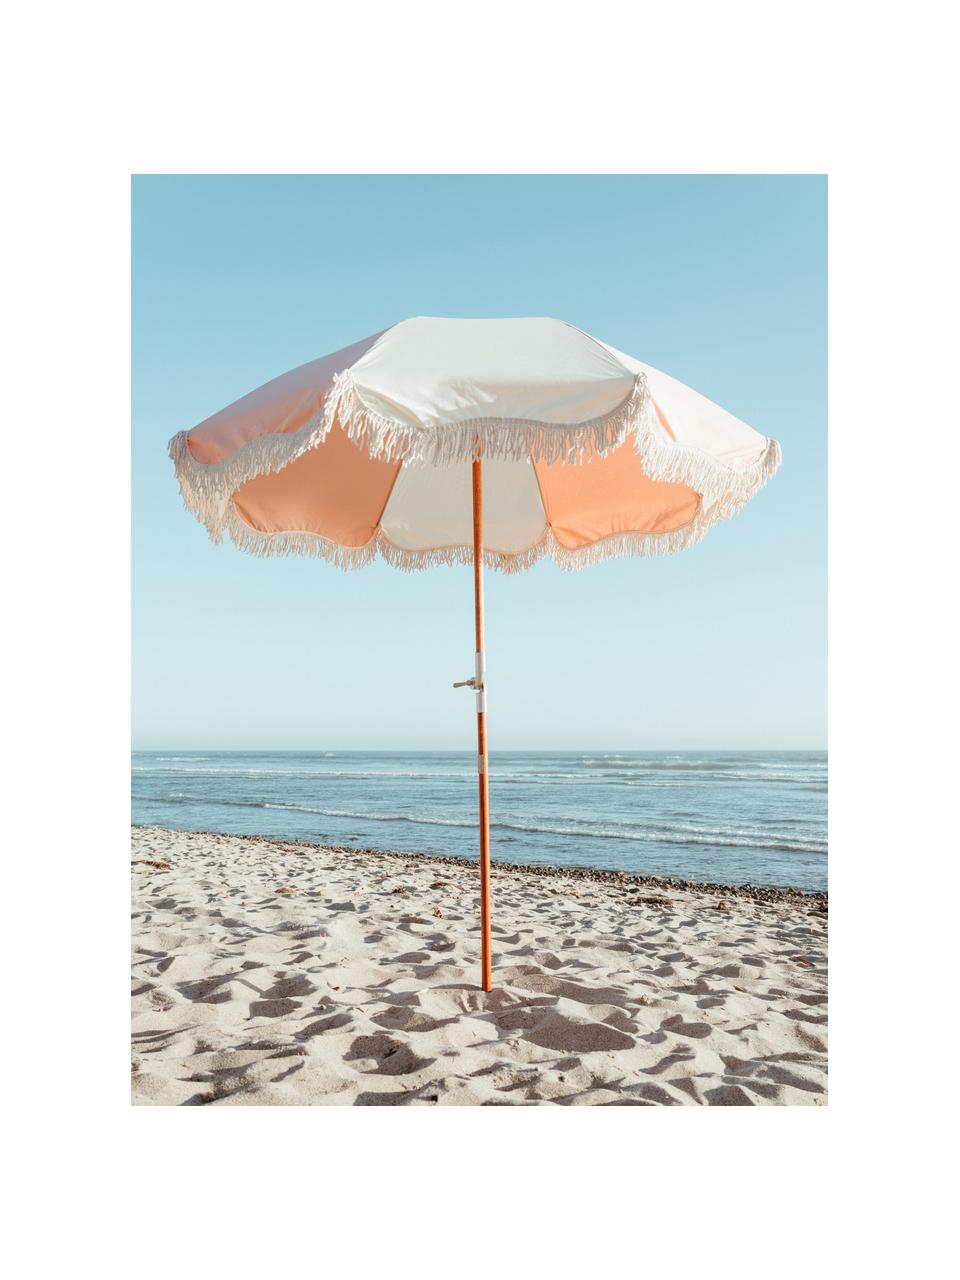 Sonnenschirm Retro mit Fransen, abknickbar, Gestell: Holz, laminiert, Fransen: Baumwolle, Rosa, Cremeweiß, Ø 180 x H 230 cm